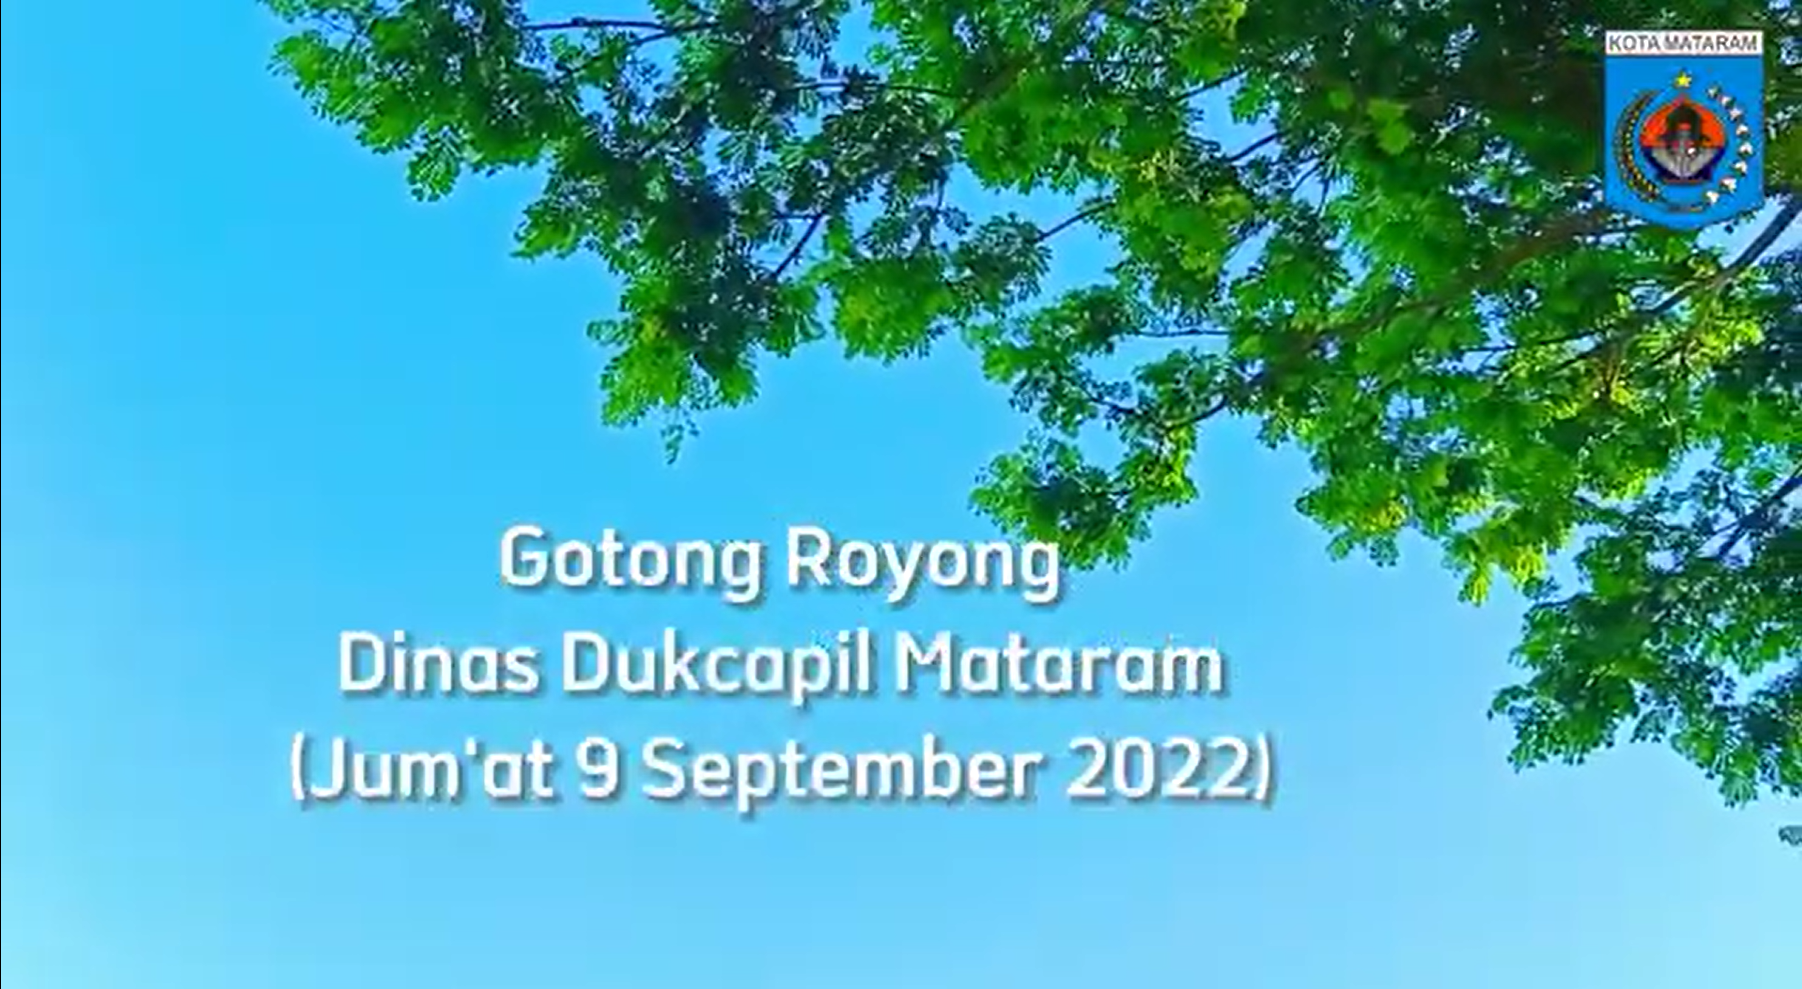 GOTONG ROYONG DUKCAPIL JUMAT 9 NOVEMBER 2022